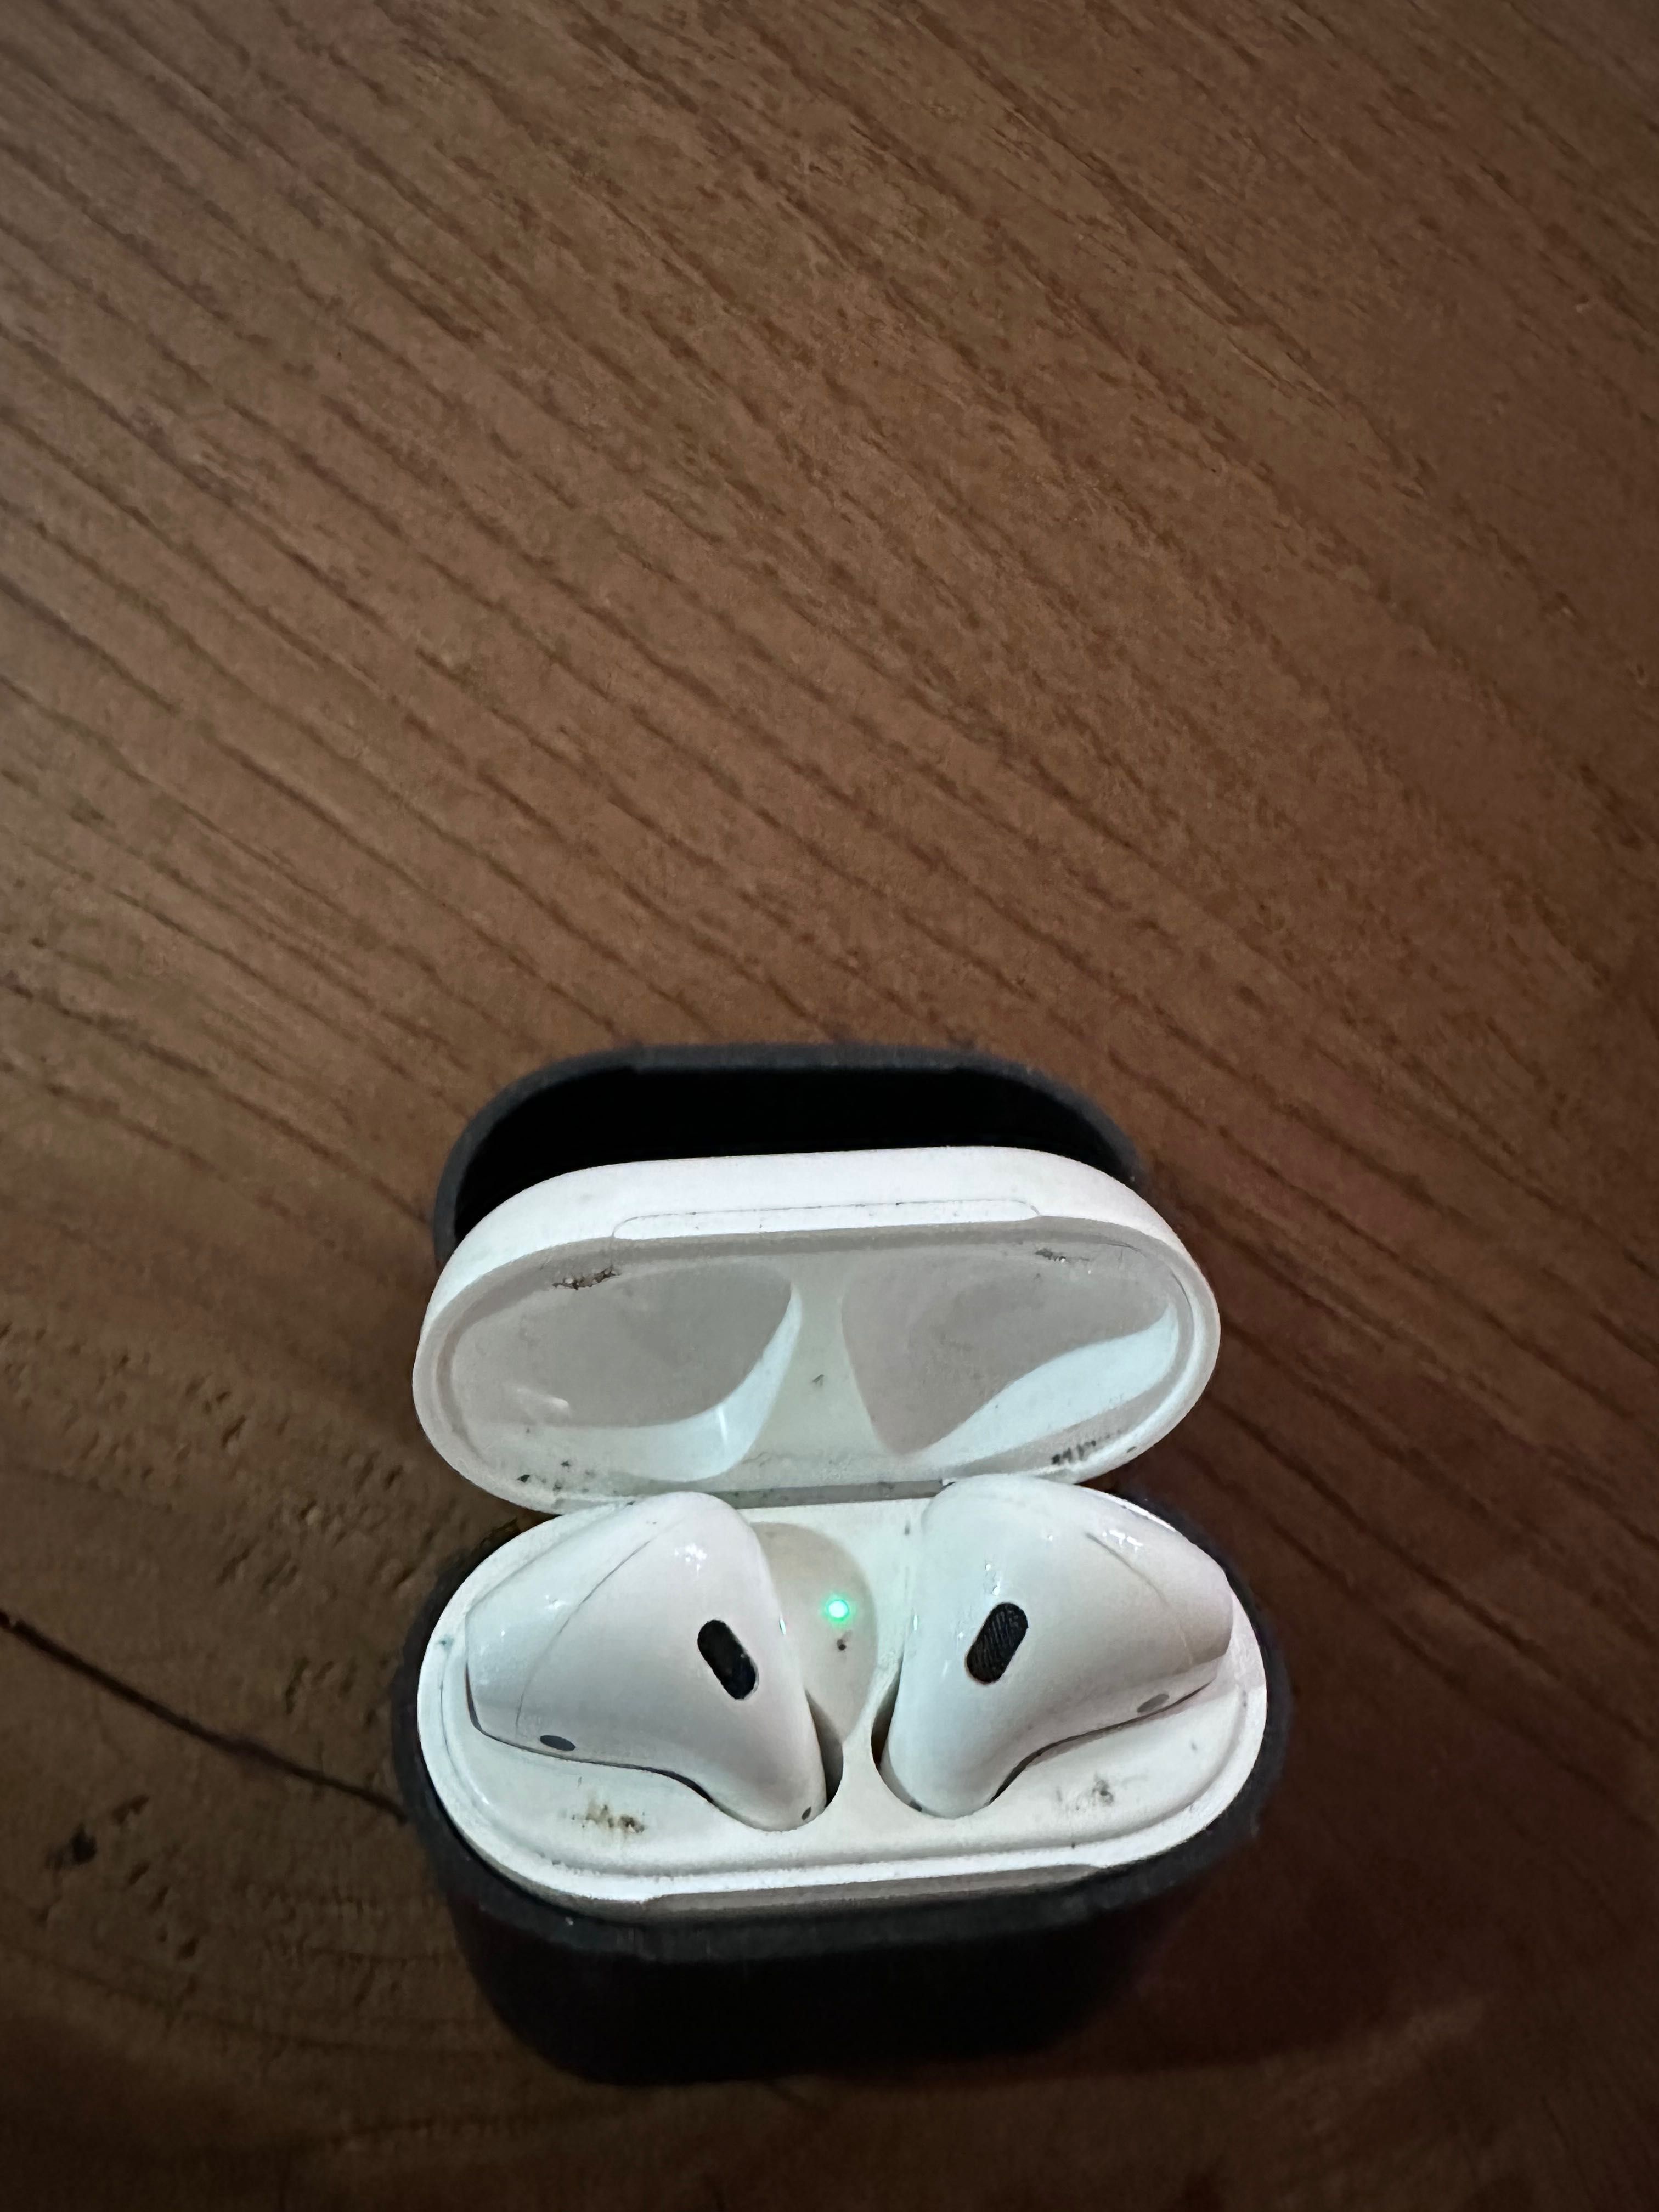 Apple AirPods (auriculares)com proteção de silicone